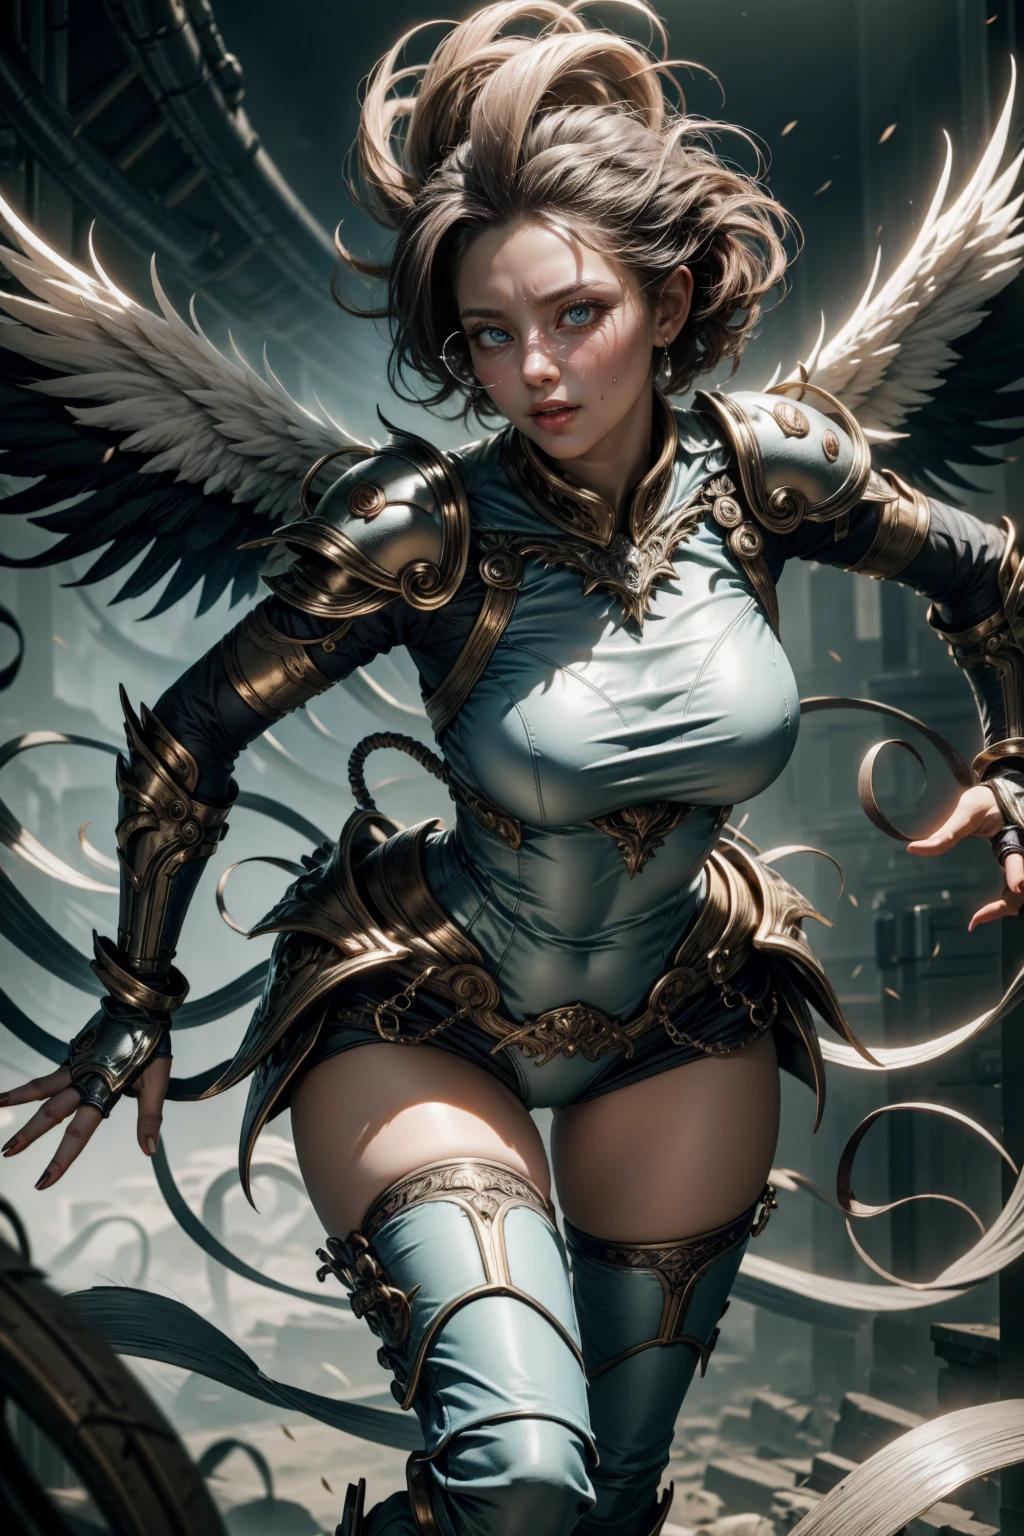 Engelhafte Frau, blaue Farbe, bläuliche Rüstung, sexy stehend mit Brille, Wildfang kurze Haare, und weißen Flügeln, Bewegungspose, Ganzkörper, Hände auf Brüsten
